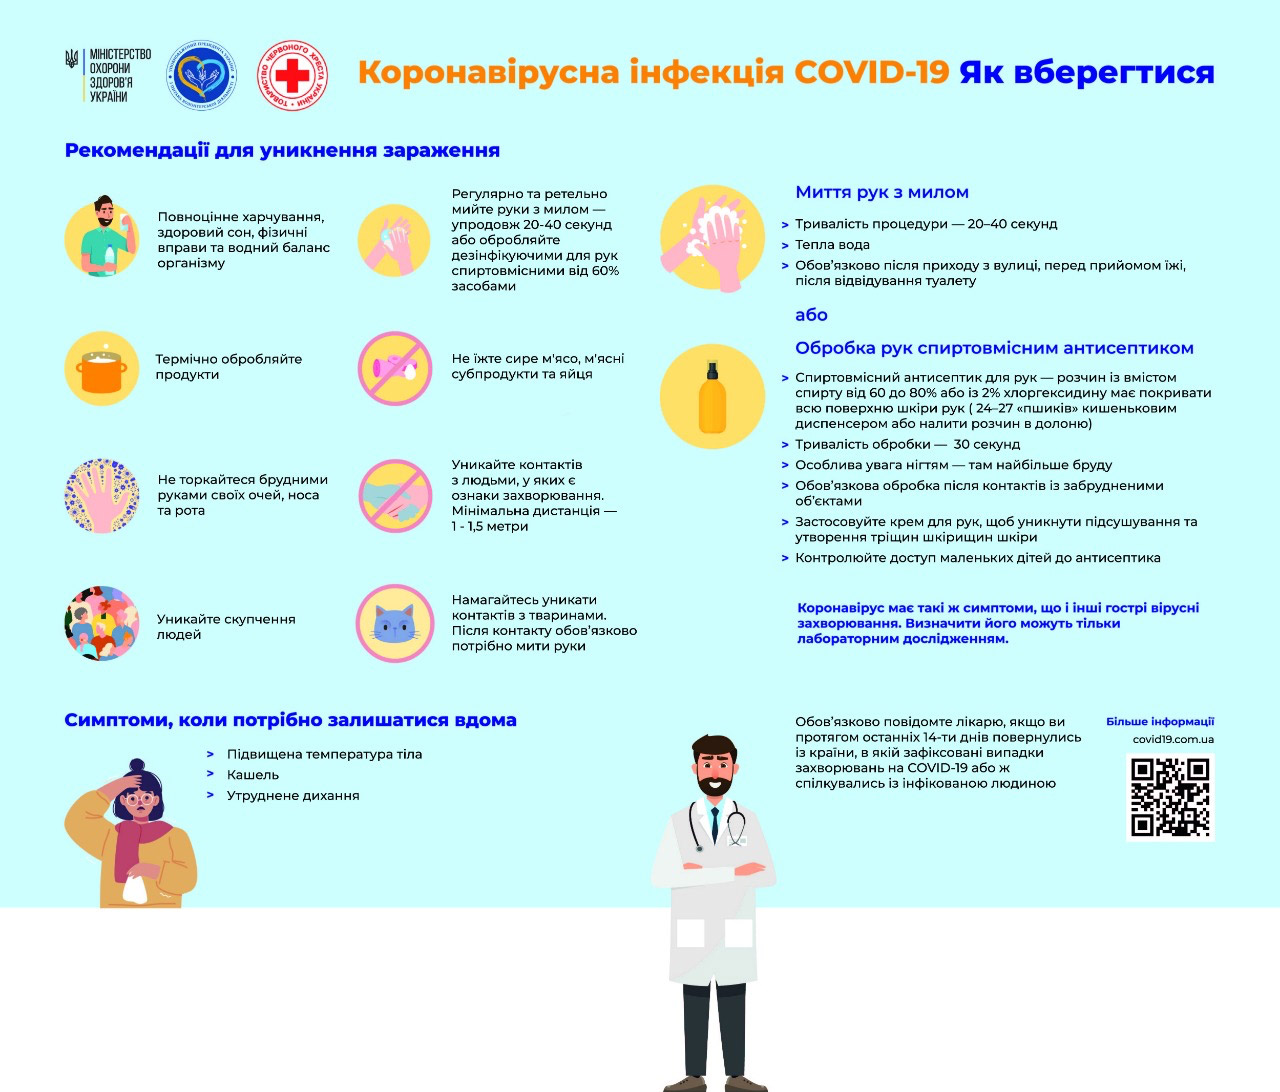 Меры предосторожности распространения коронавируса COVID-19 на ...